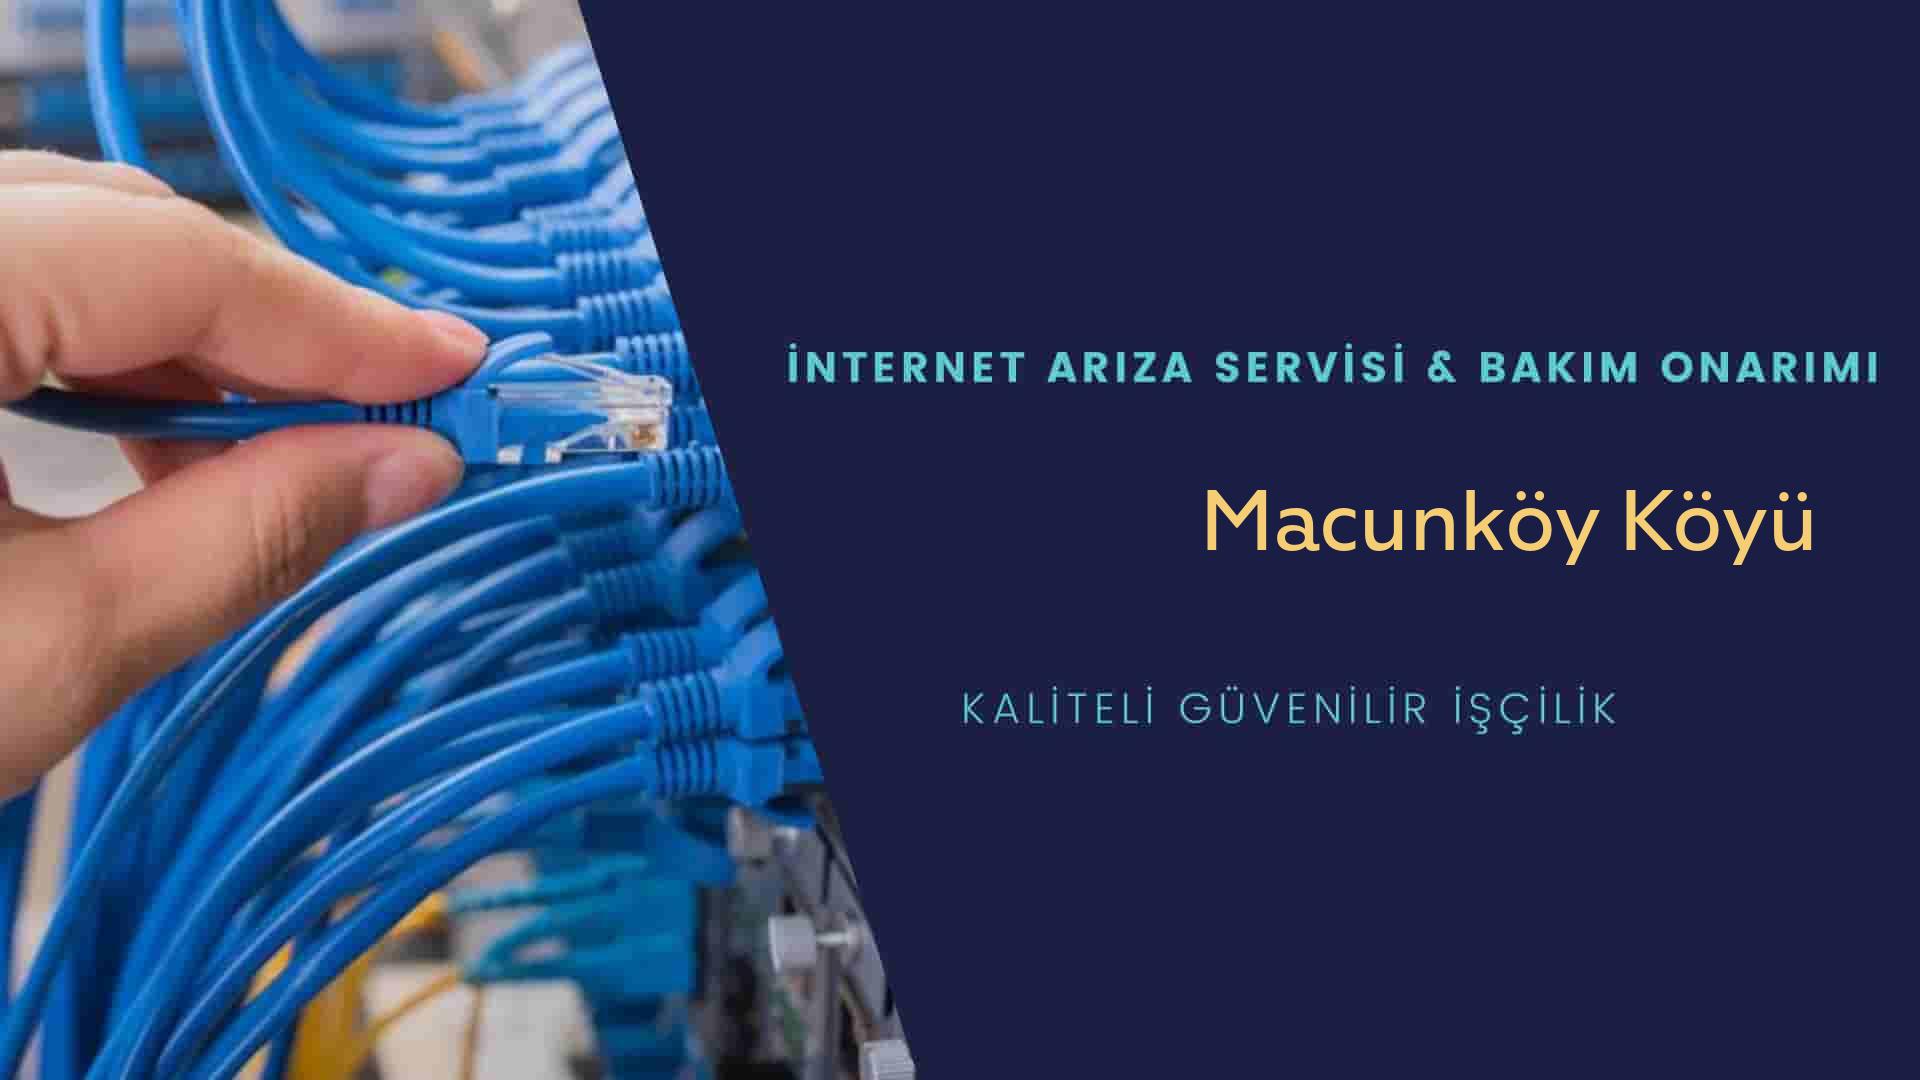 Macunköy Köyü internet kablosu çekimi yapan yerler veya elektrikçiler mi? arıyorsunuz doğru yerdesiniz o zaman sizlere 7/24 yardımcı olacak profesyonel ustalarımız bir telefon kadar yakındır size.